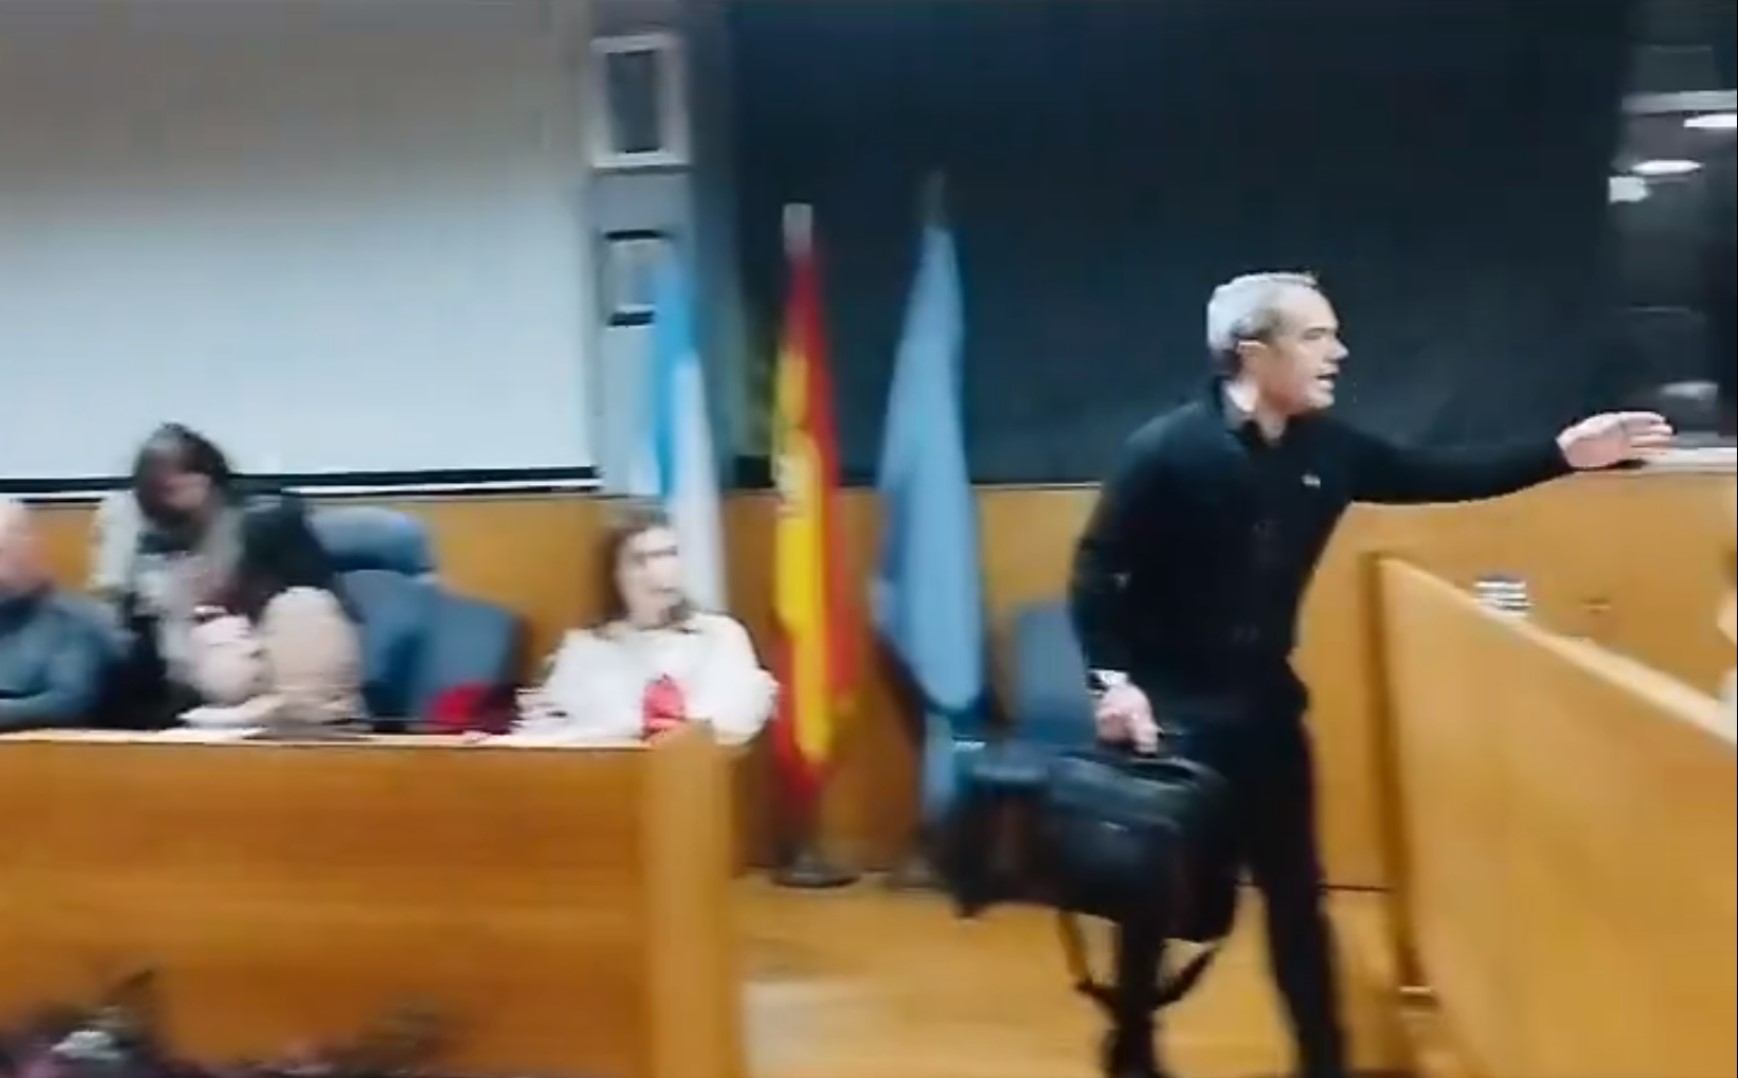 Alegría exigeix la dimissió d'un regidor del PP a Cangas per aixecar la mà a la portaveu socialista